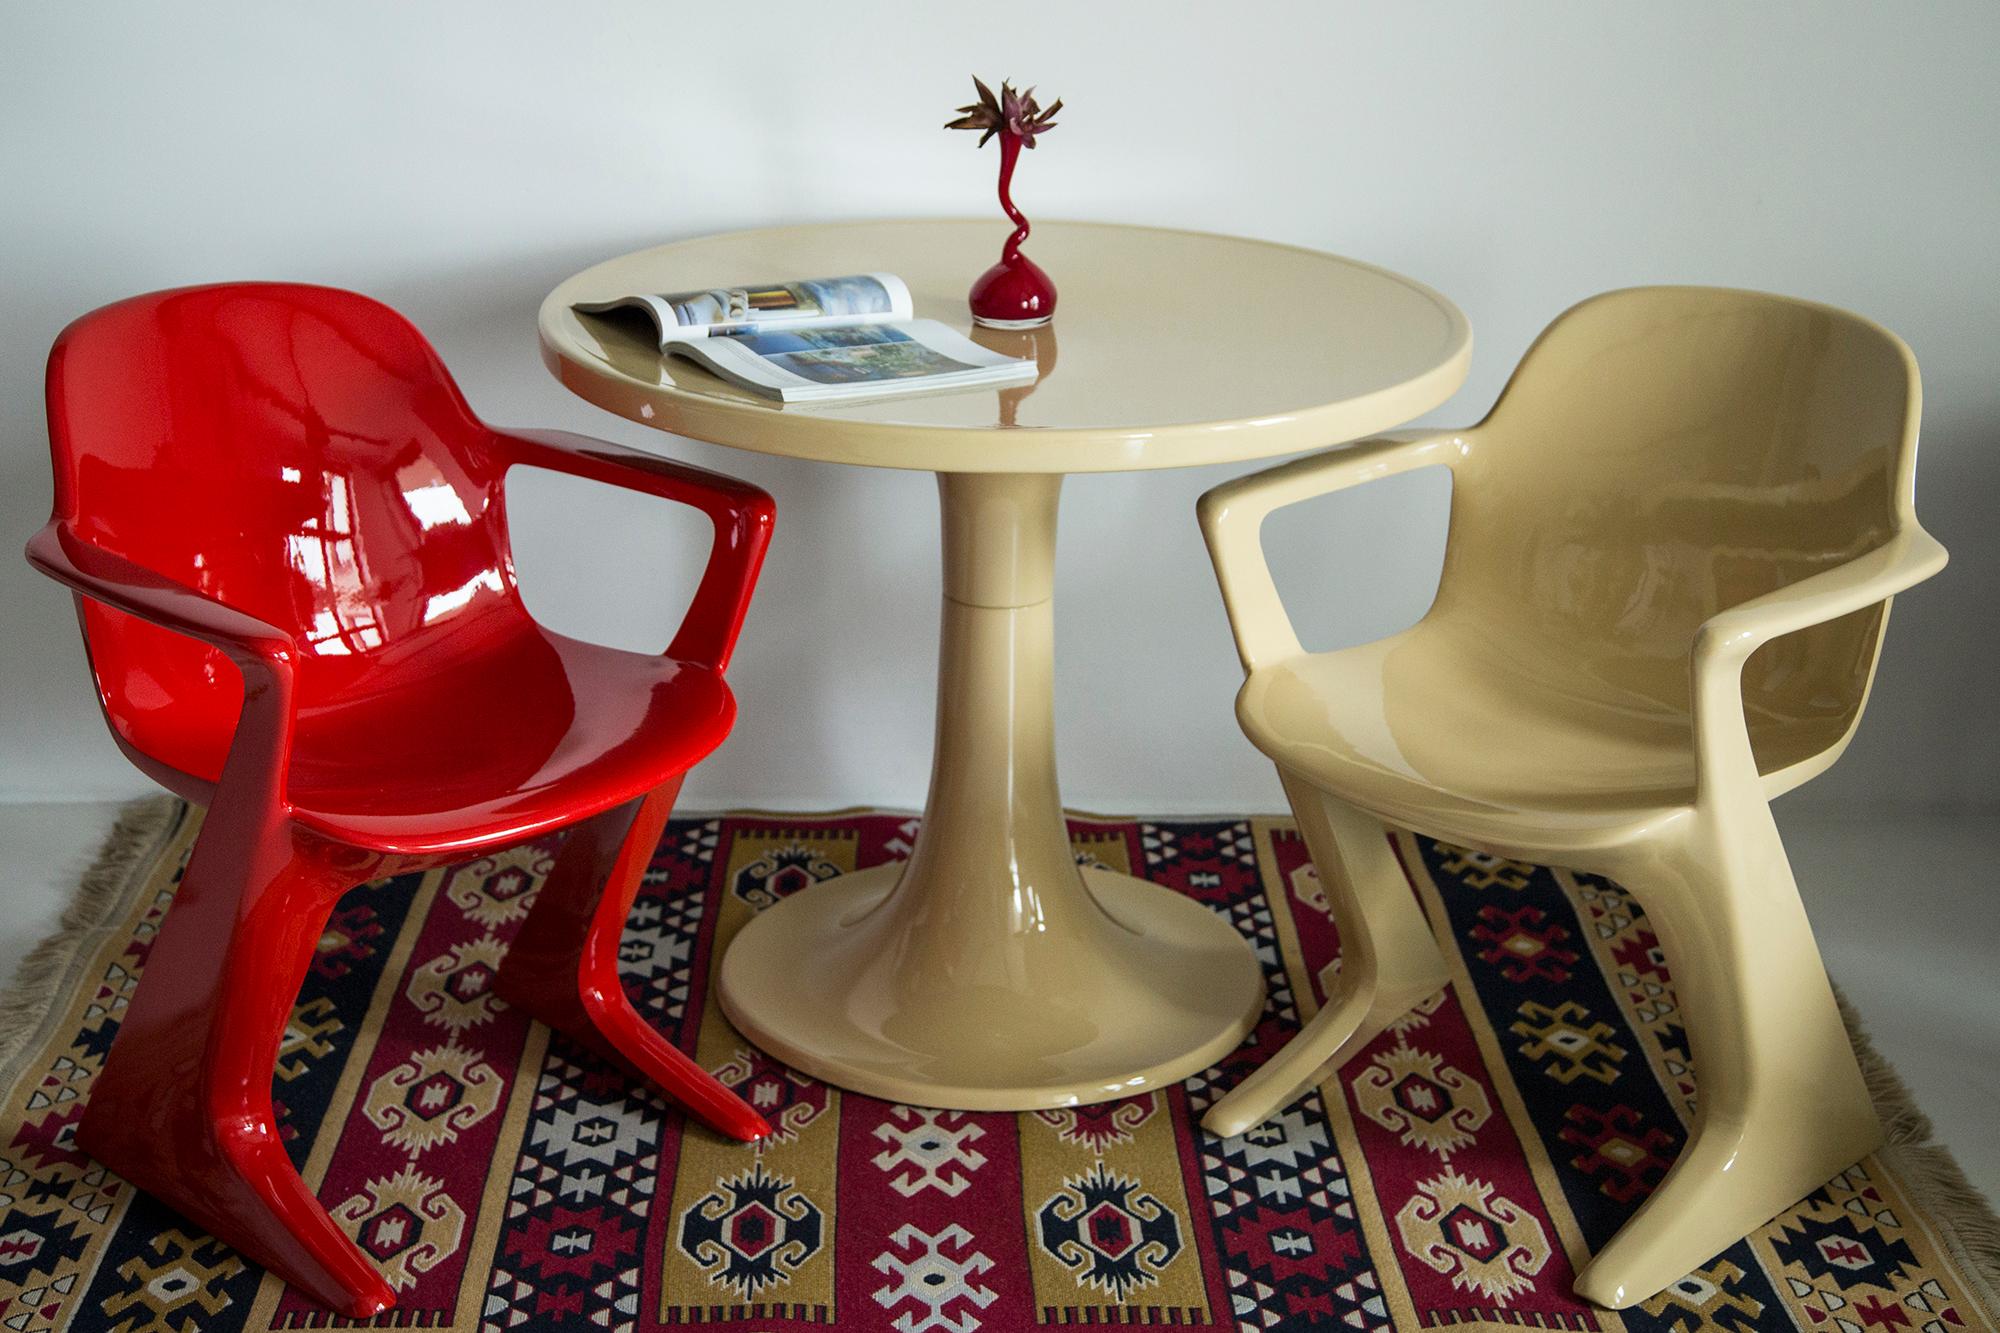 Der z.stuhl, entworfen von Ernst Moeckl (1931-2013) in den 1970er Jahren, ist ein Freischwinger aus Polyurethan, der mit und ohne Armlehnen erhältlich ist. Im Volksmund ist der Stuhl unter seinen geometriebezogenen Namen wie 